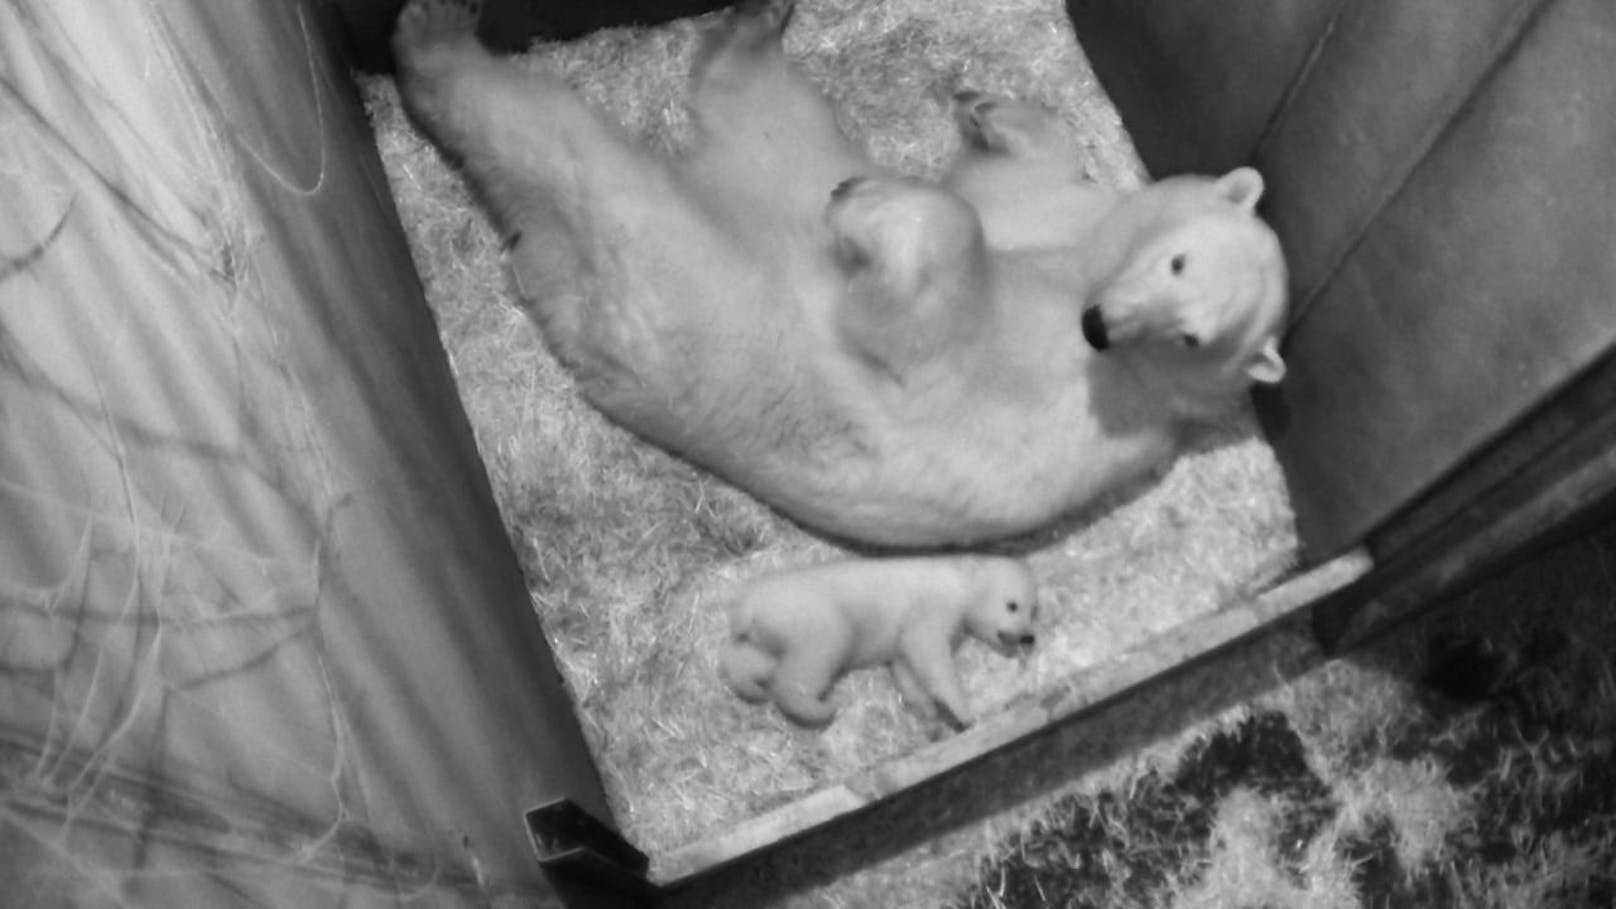 Noch steht das Eisbärenbaby sehr wackelig auf seinen Beinen. Das wird sich in den kommenden drei Wochen jedoch ändern, heißt es aus dem Tiergarten Schönbrunn.